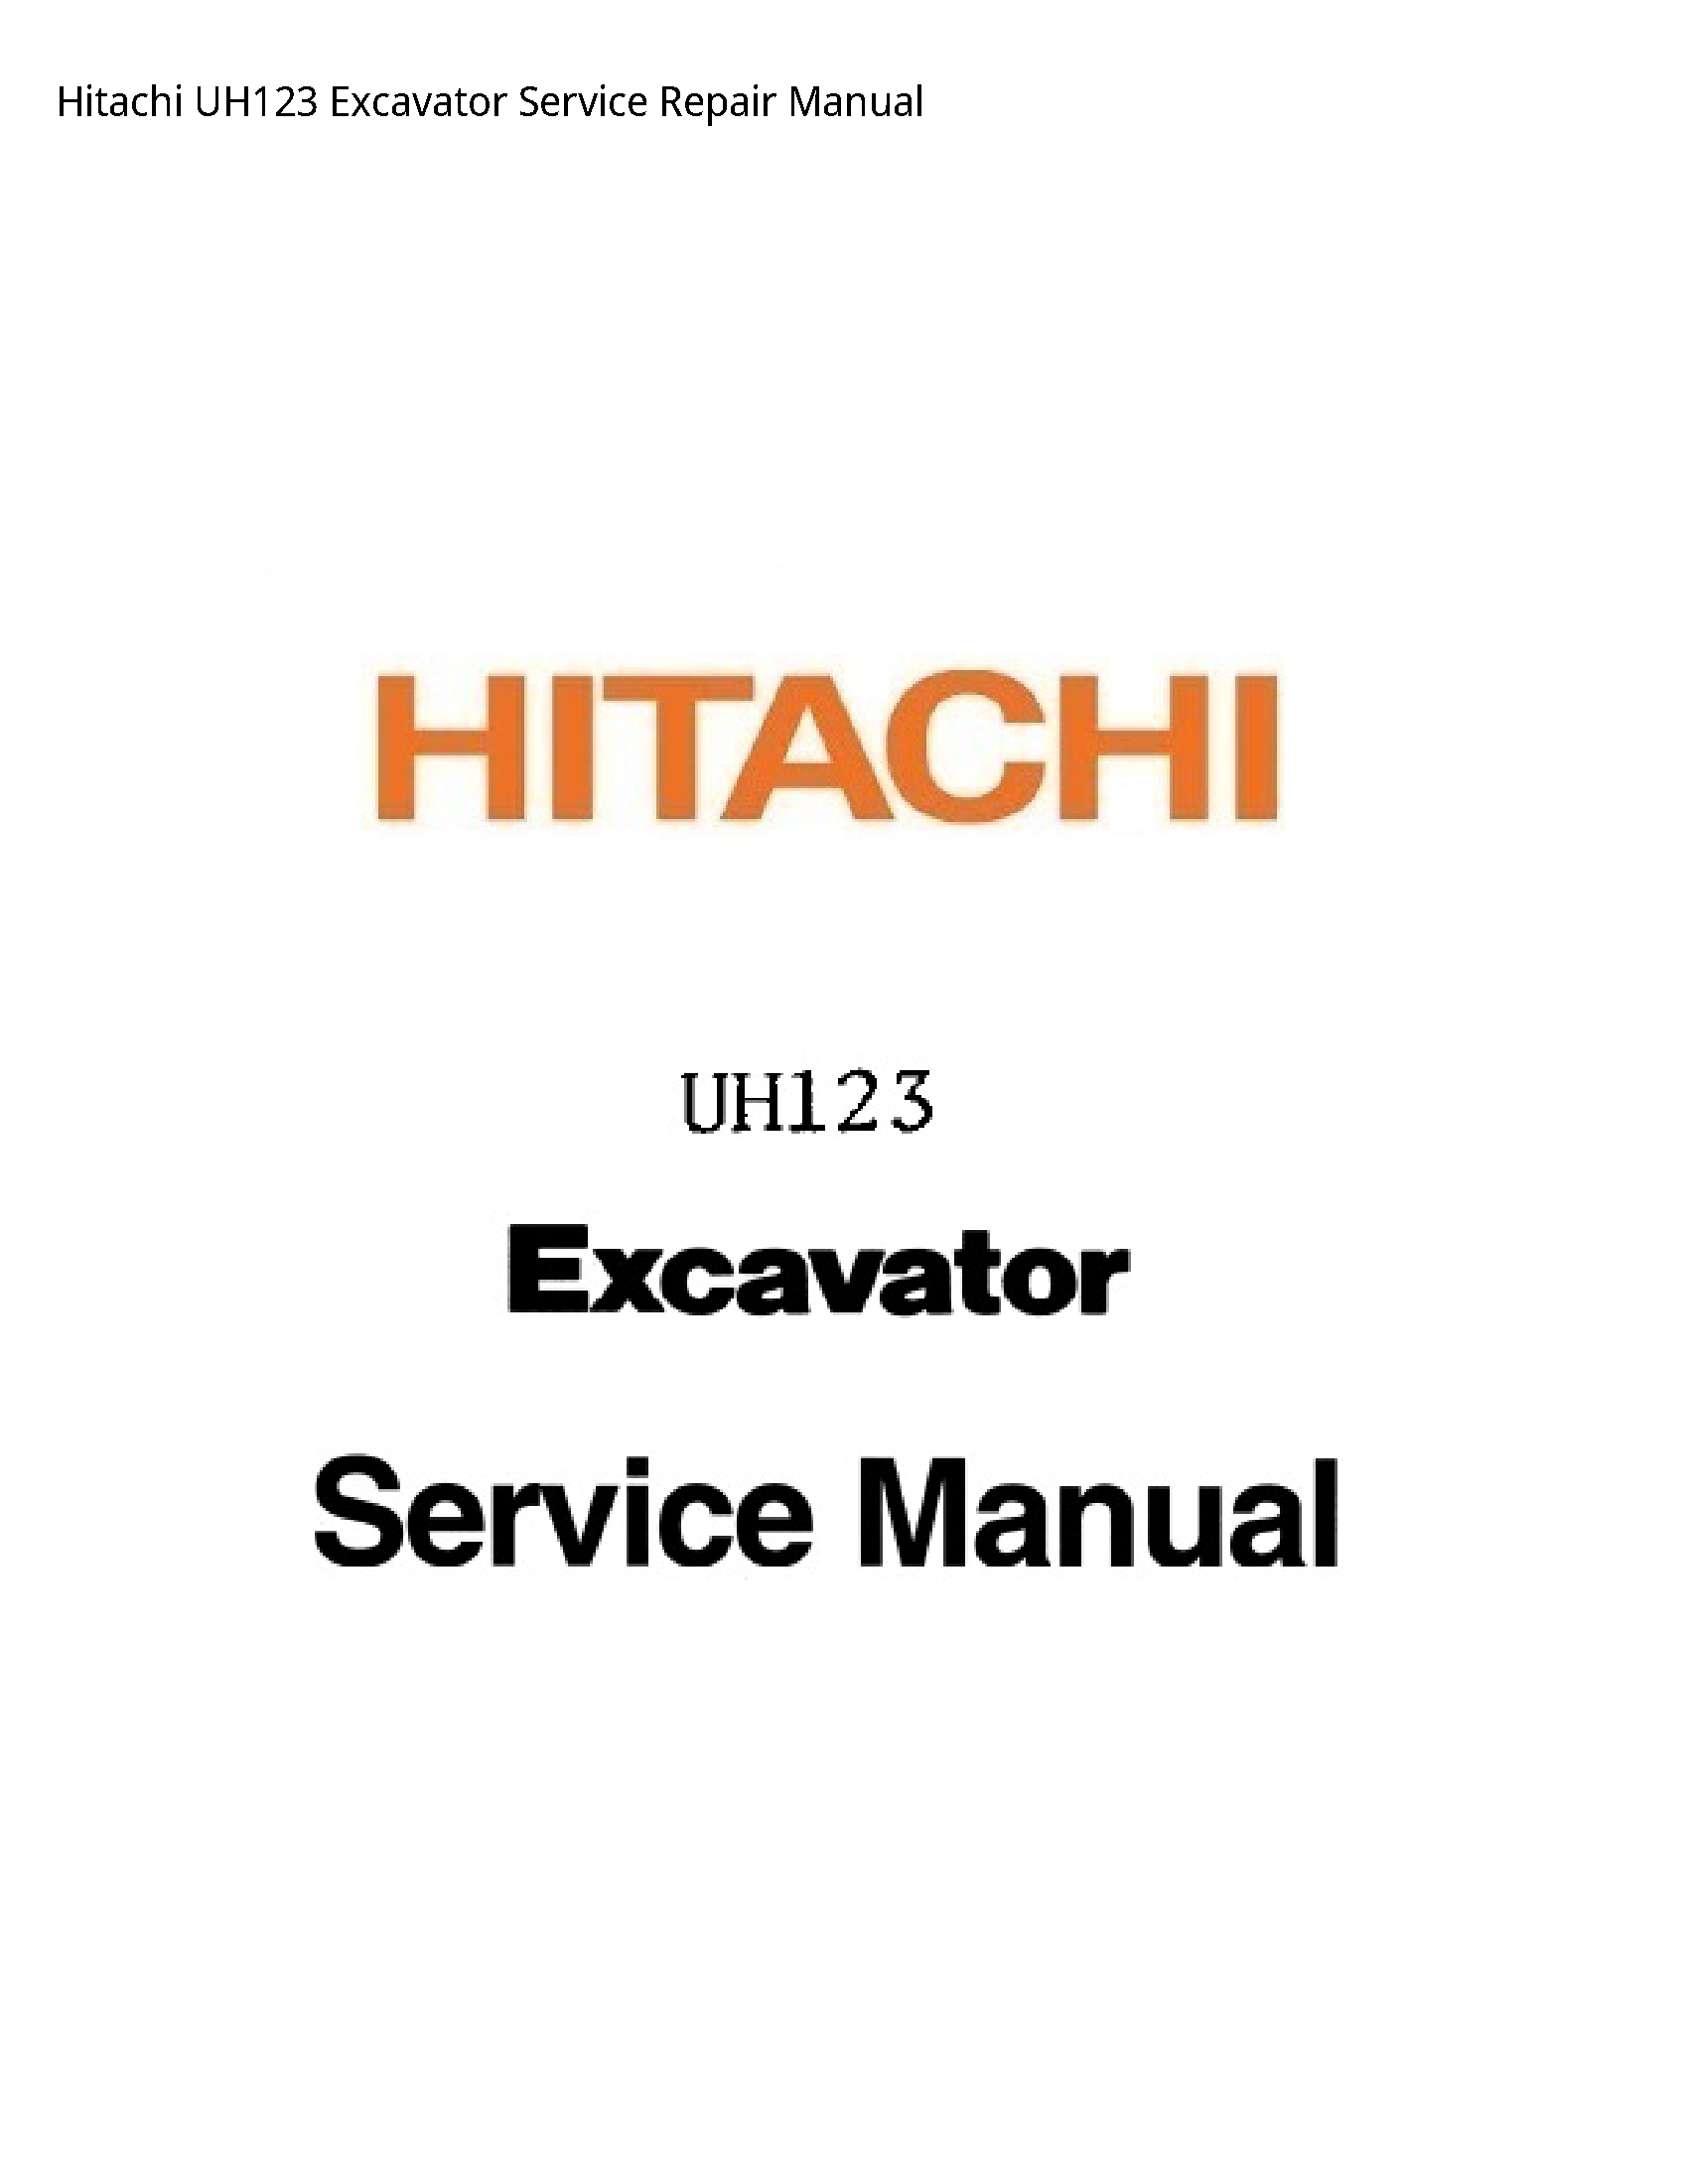 Hitachi UH123 Excavator manual